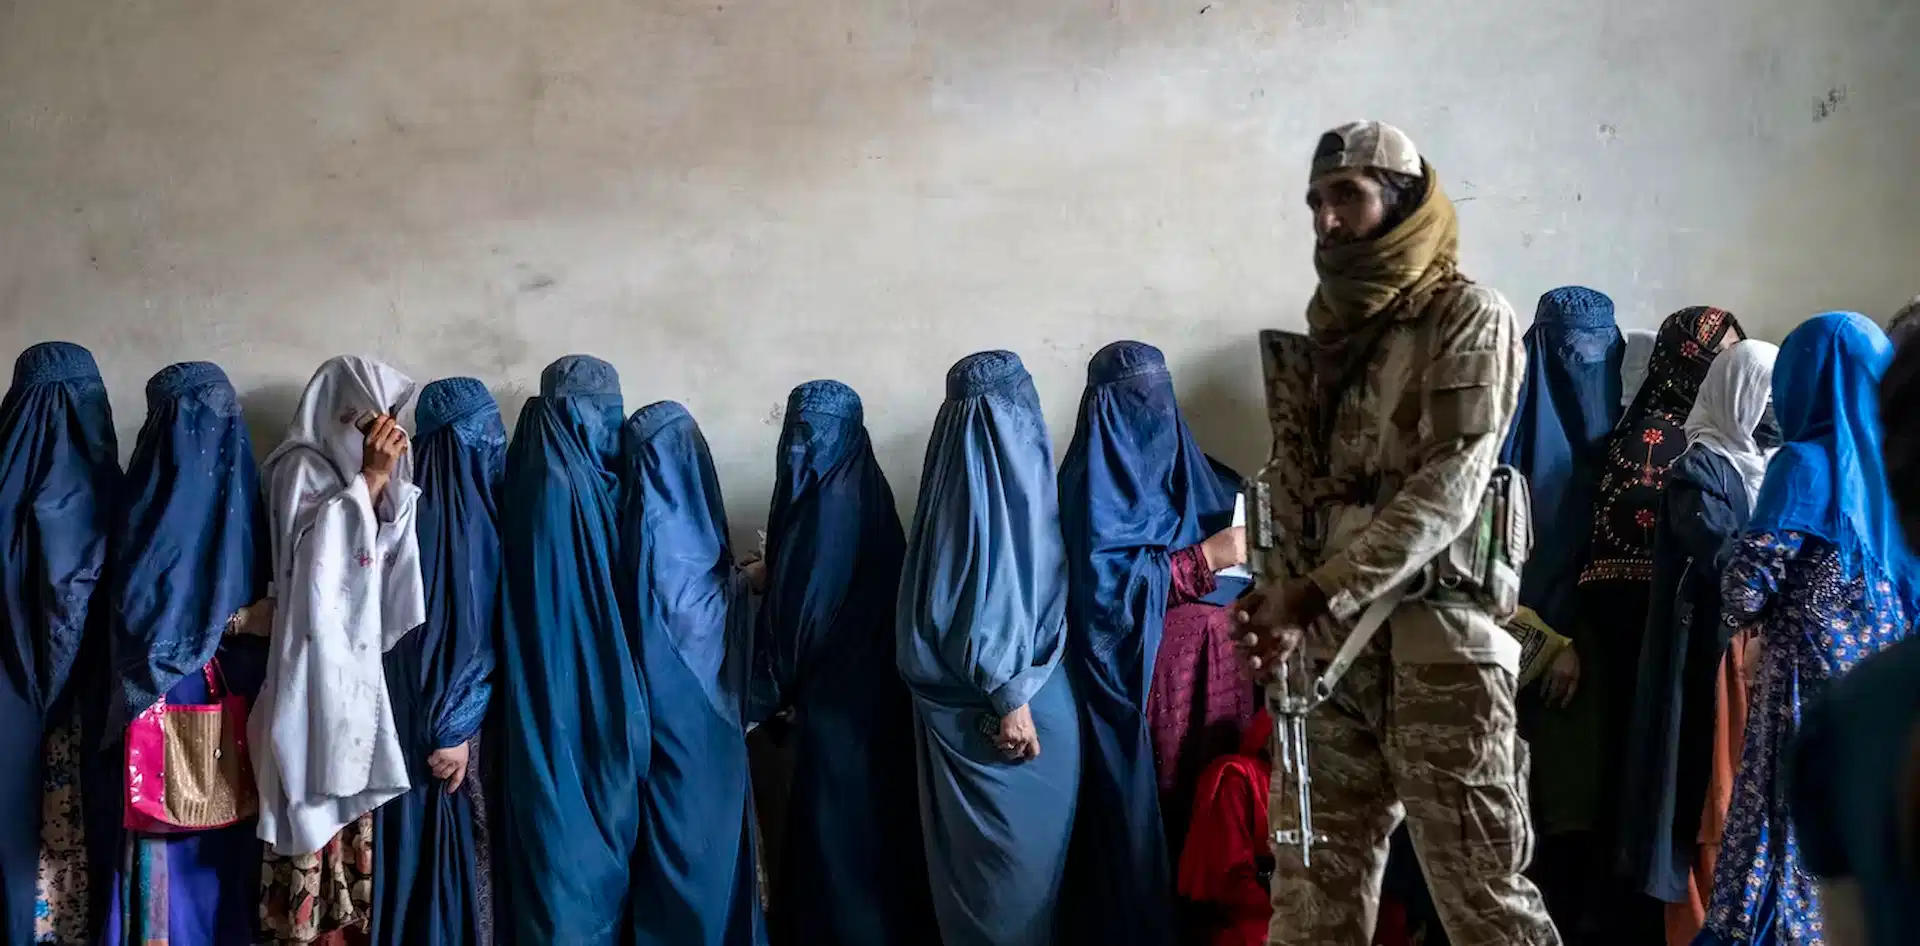 Un combatiente talibán monta guardia mientras unas mujeres esperan para recibir raciones de comida distribuidas por un grupo de ayuda humanitaria, en Kabul, Afganistán, en mayo de 2023 / Foto: The Conversation